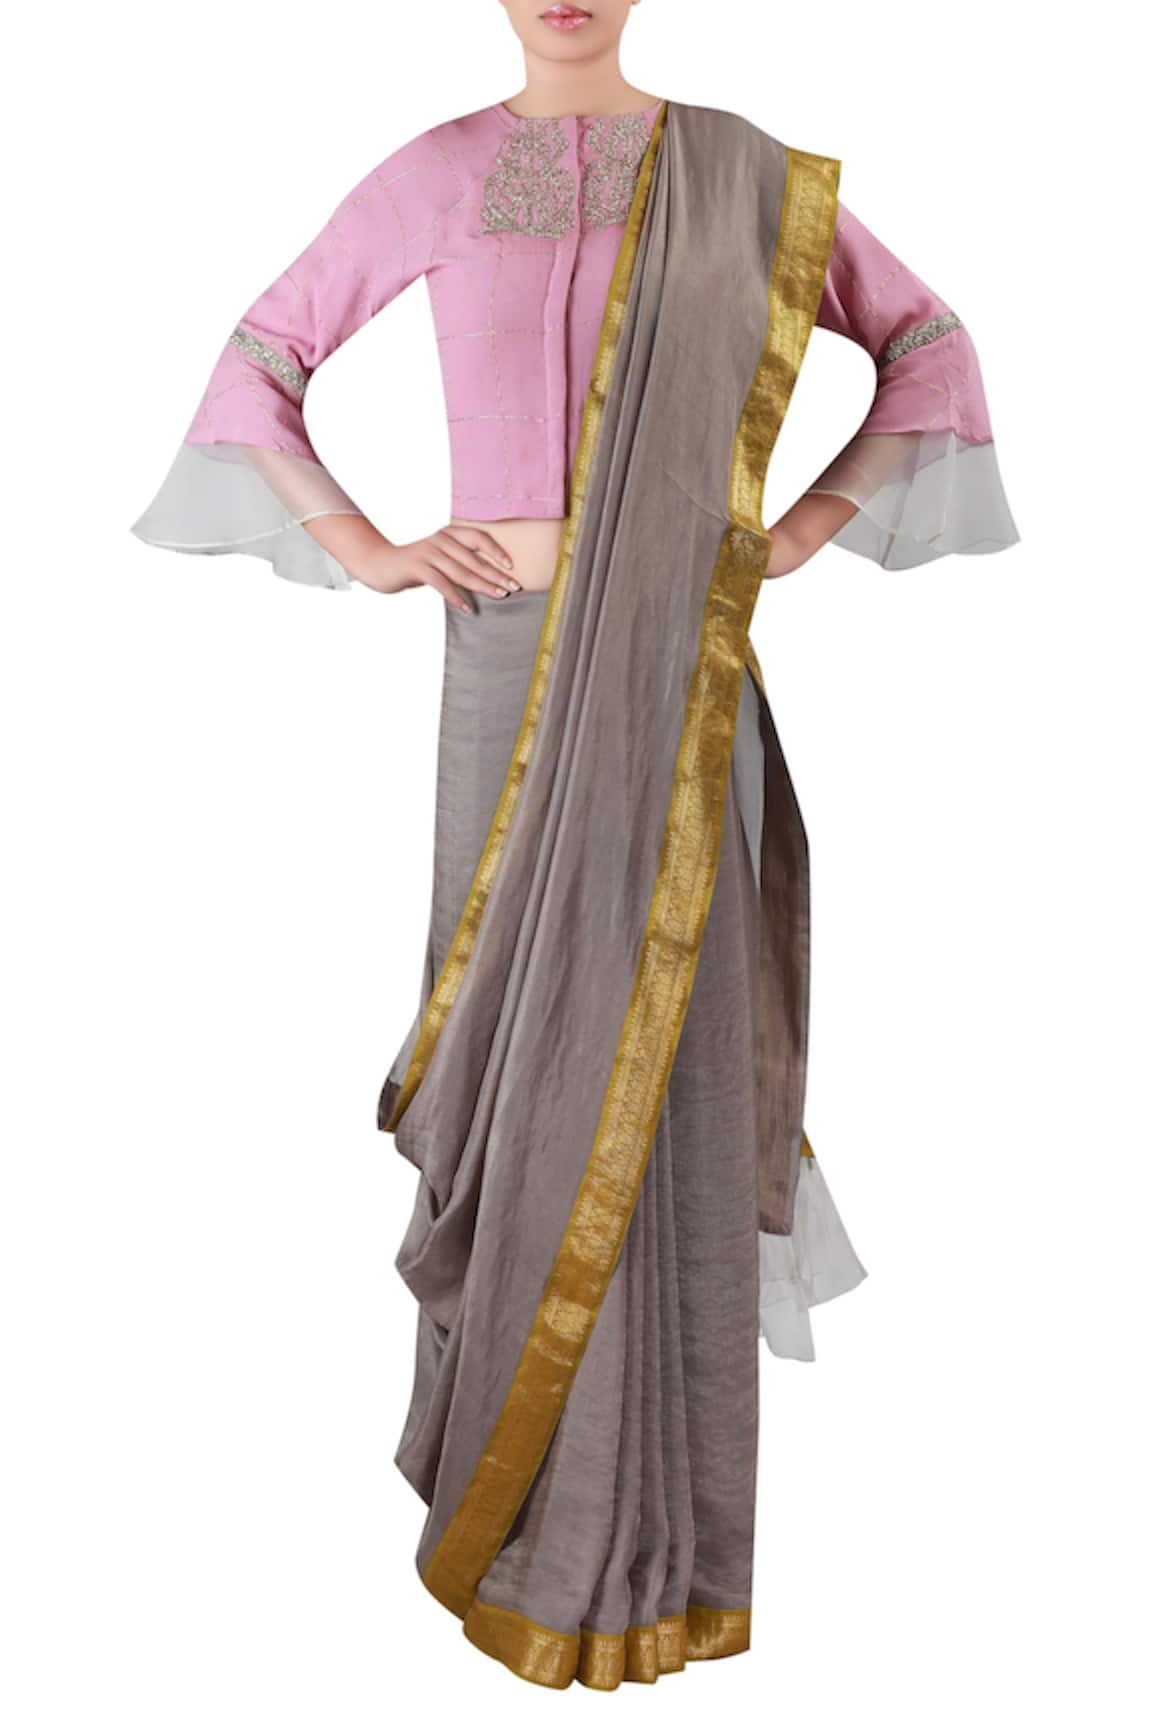 Readymade Pink Saree Blouse, Designer Sari Blouse, Sari Blouse, Indian Sari  Blouse, Bell Sleeves Blouse, Bollywood Blouses, Indian Blouse - Etsy